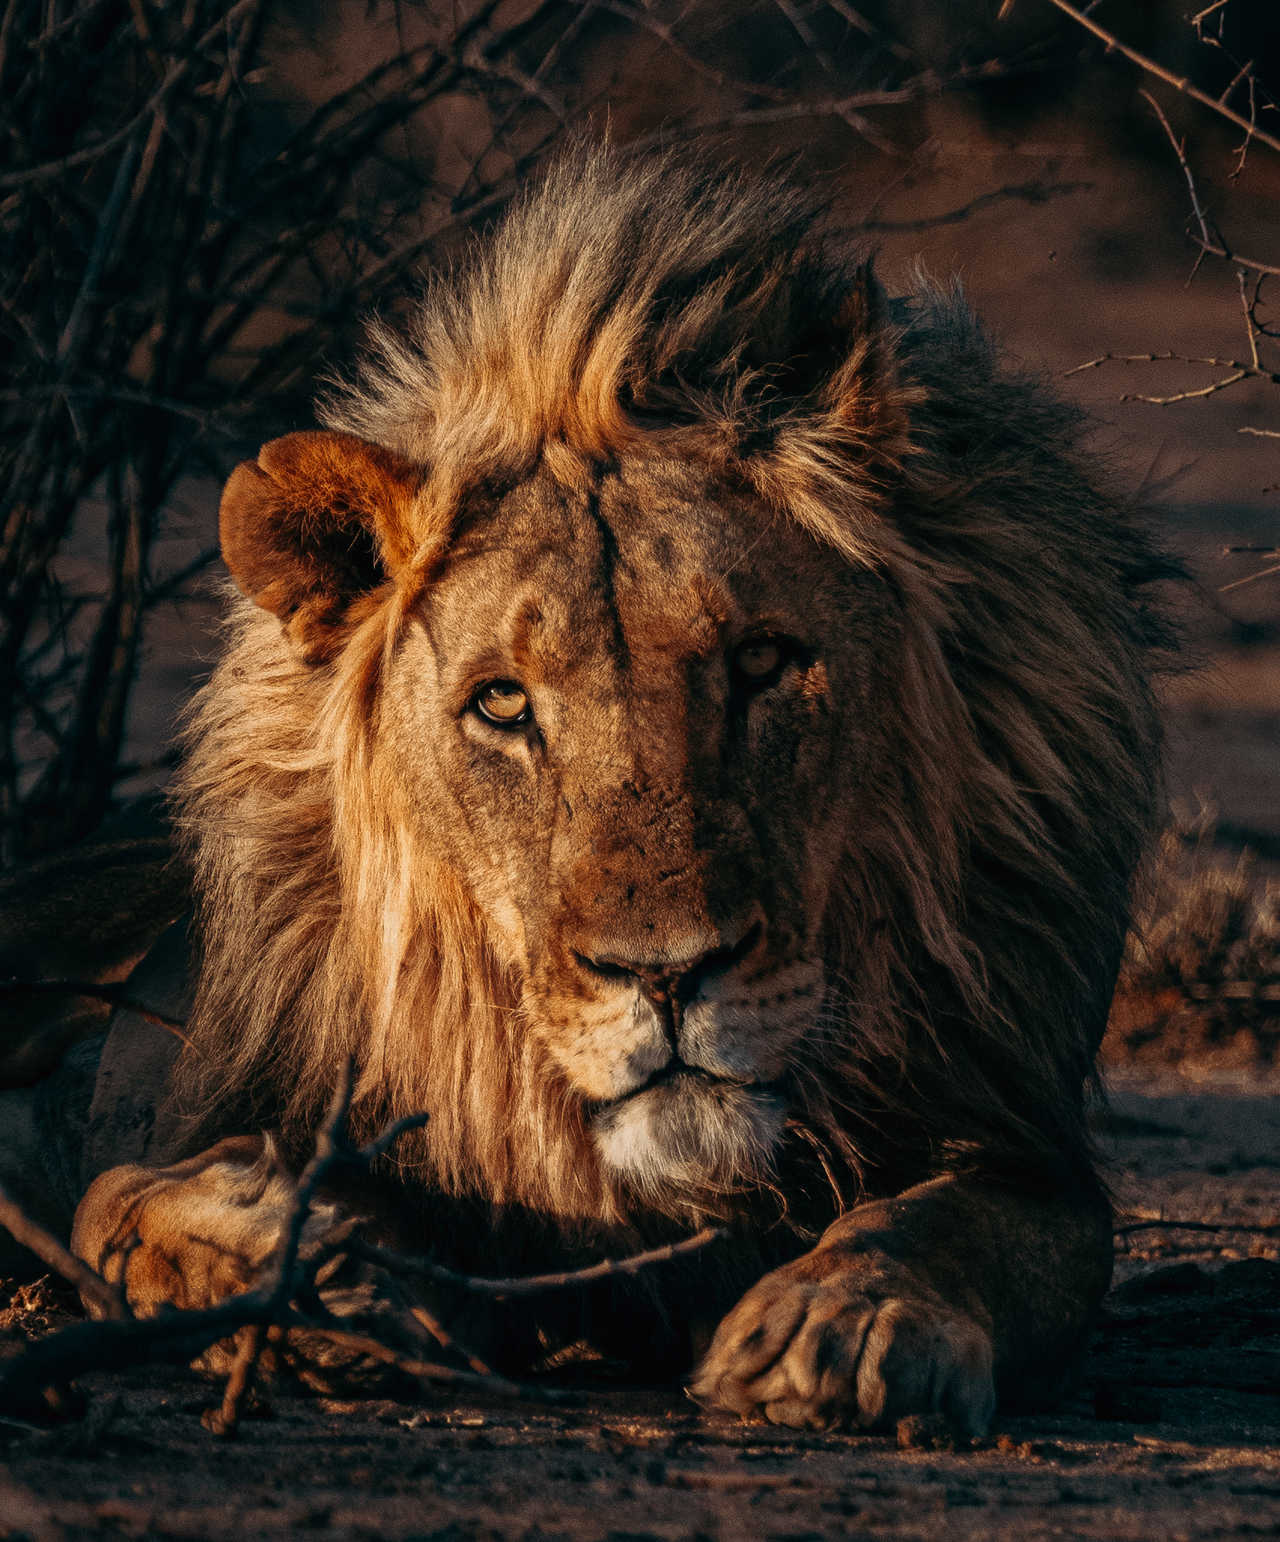 Lion en Tanzanie